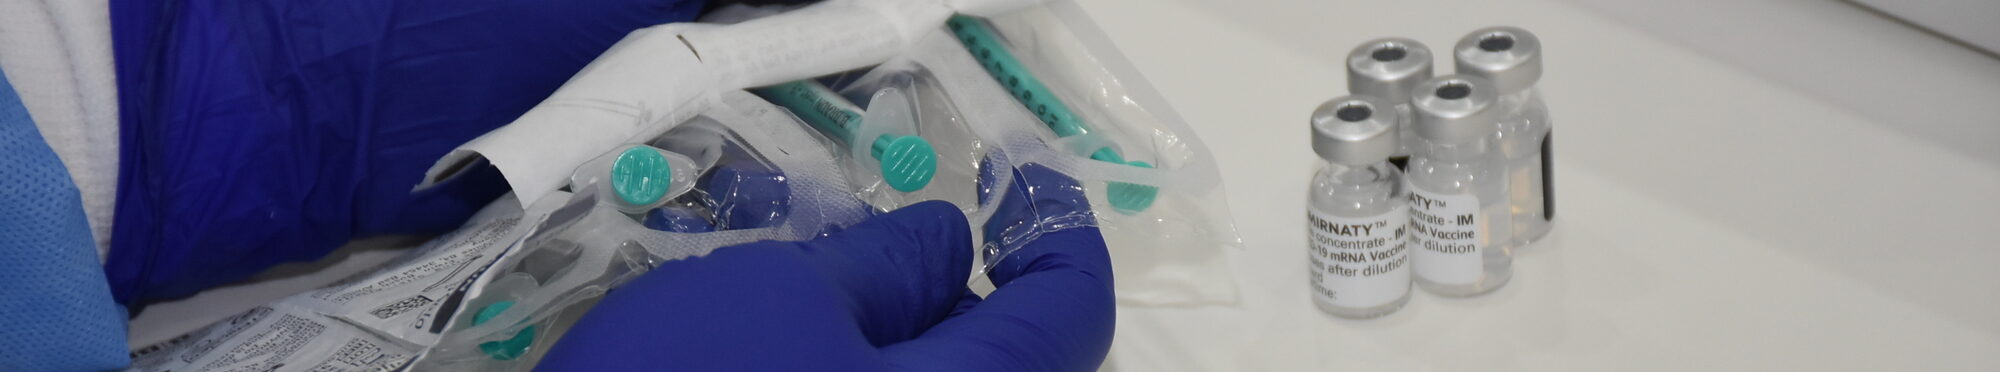 Verpackte Impfspritzen werden ausgepackt von einer Mitarbeiterin in blauen Handschuhen. Nur die Hände sind zu sehen